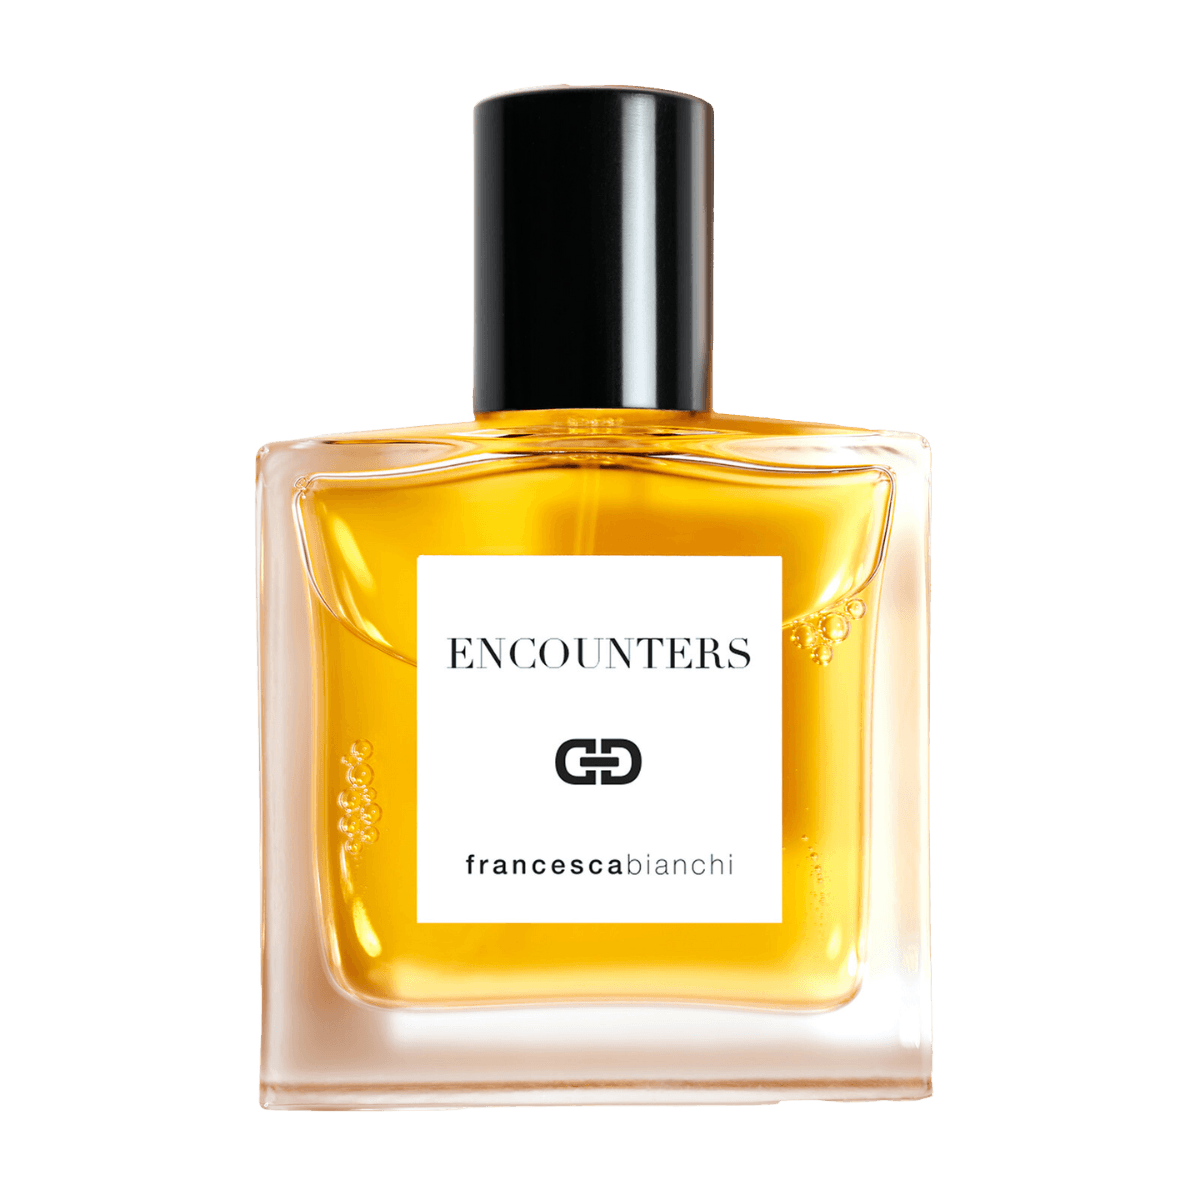 Image of Encounters 30 ml extrait de parfum by Francesca Bianchi